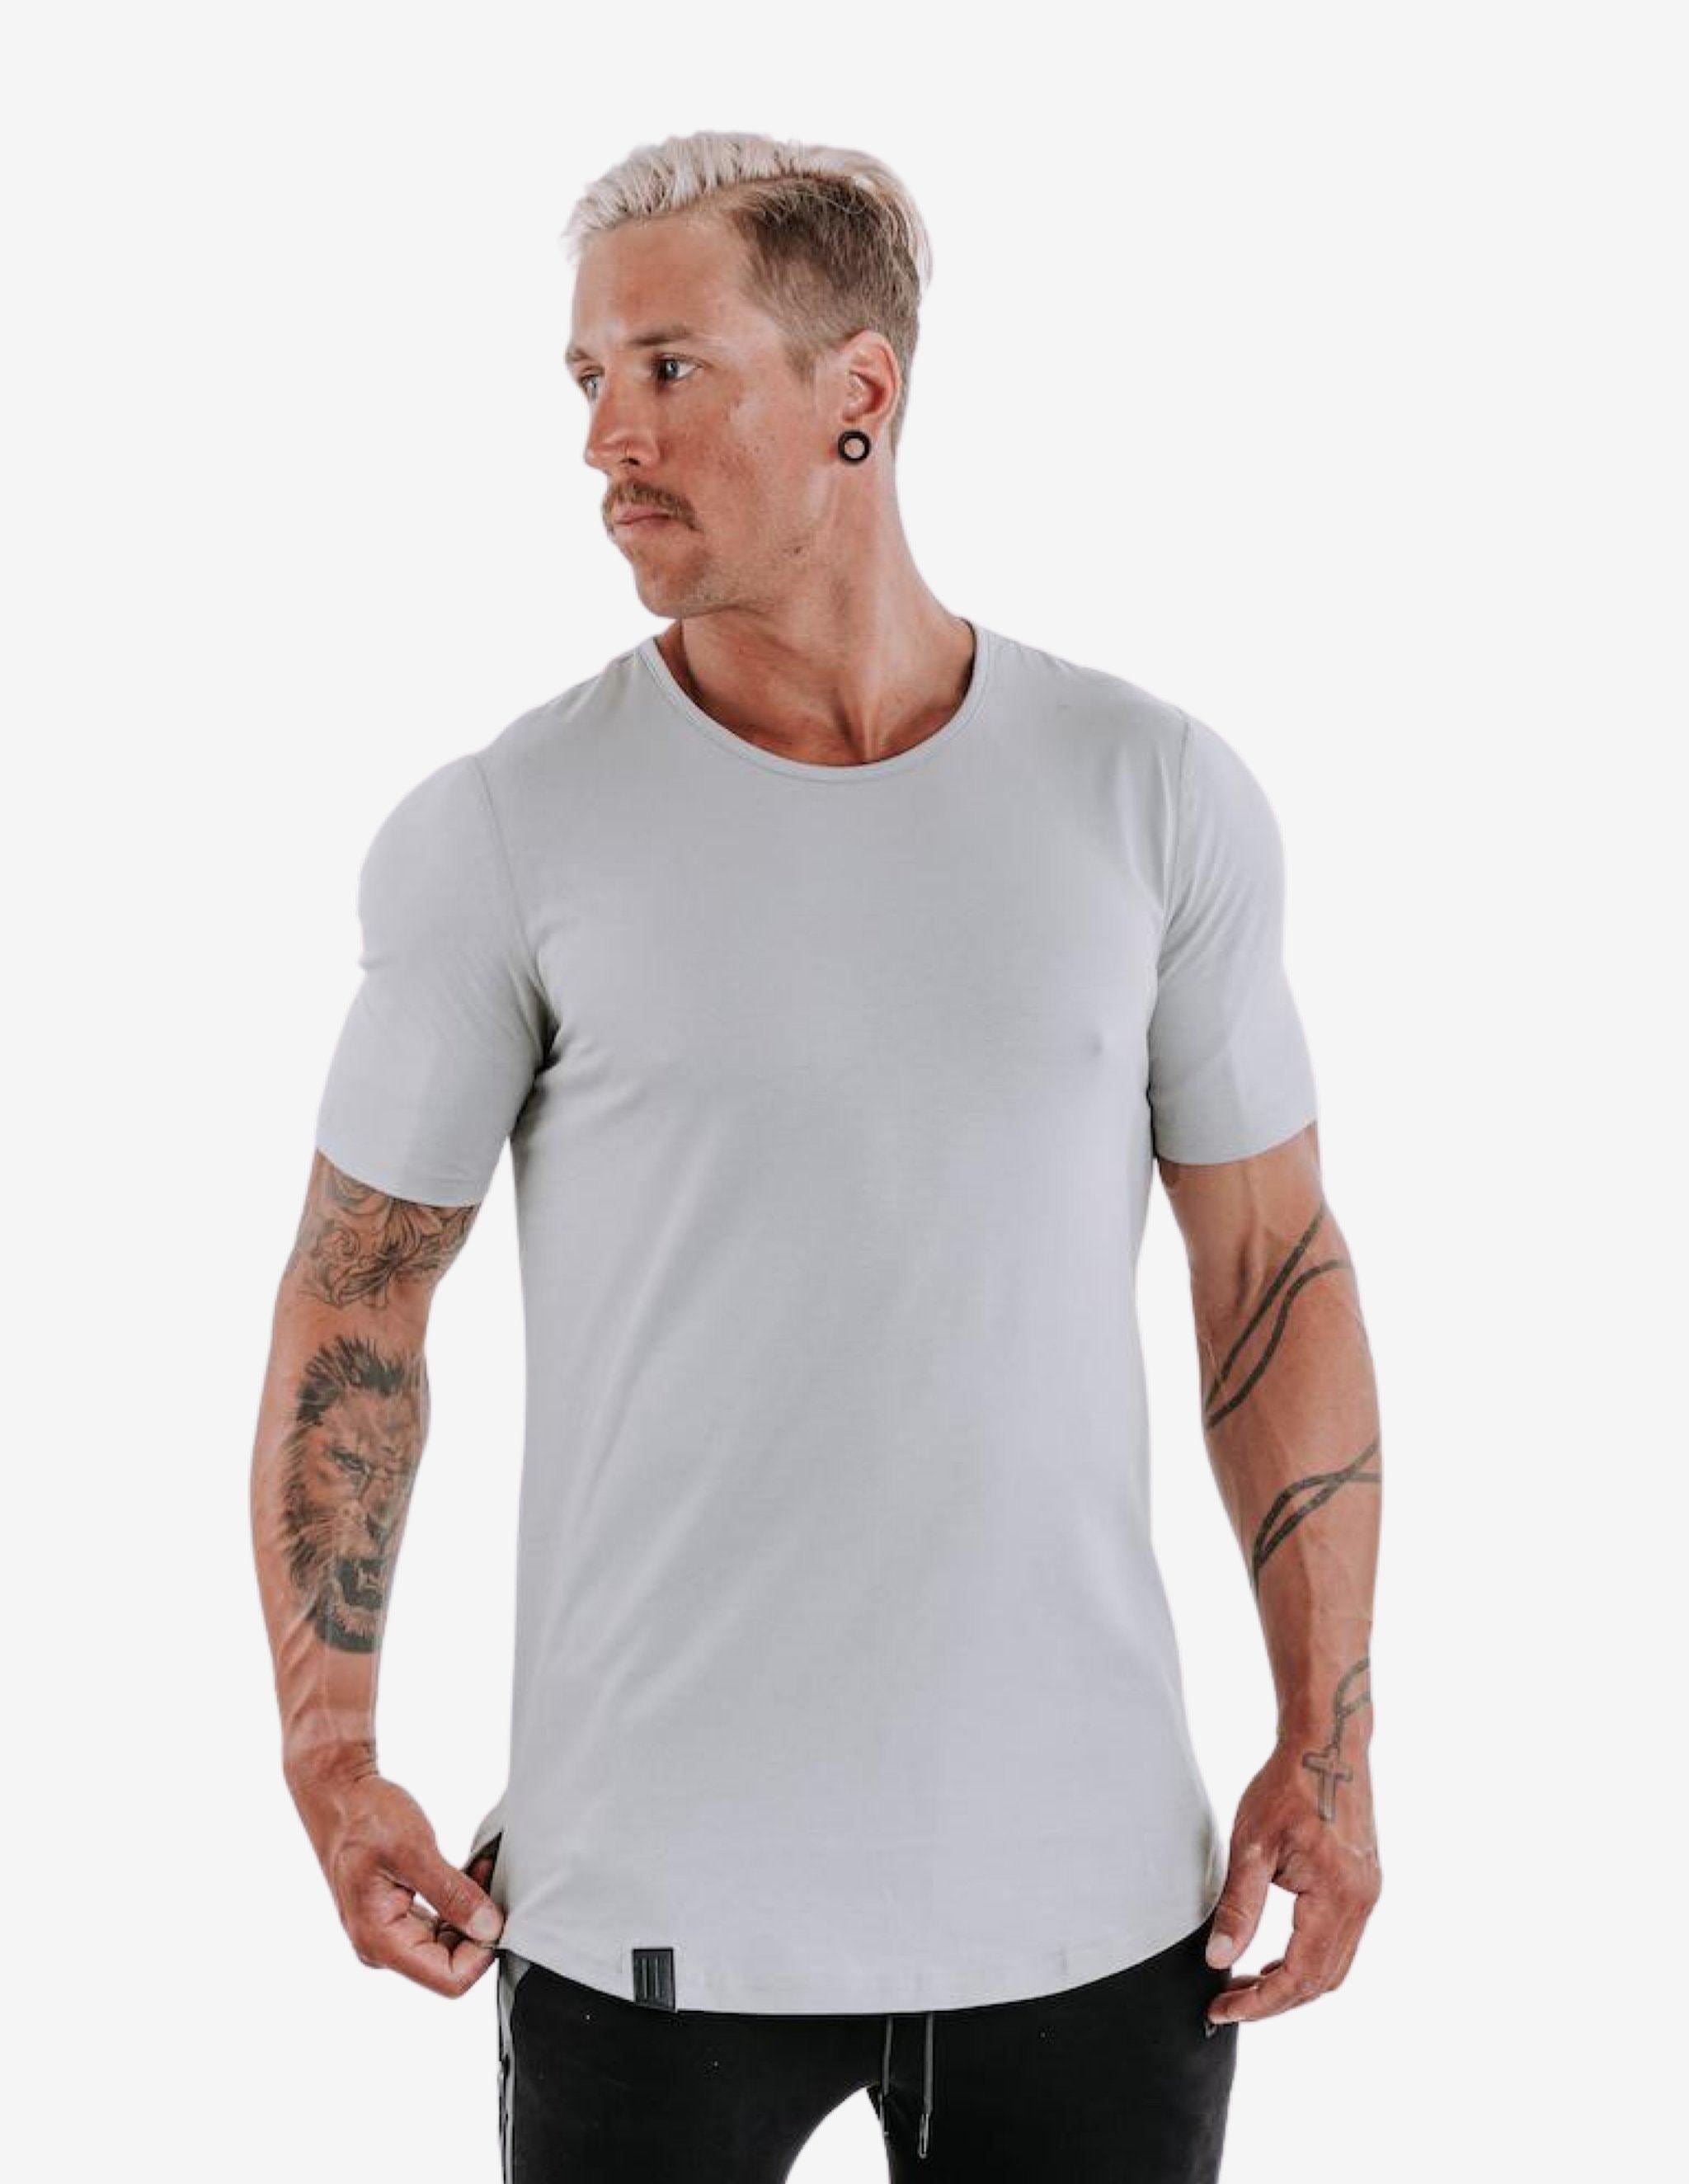 Cardinal V2 Scoop Tee - Cloud Grey-T-shirt Man-Biink Athleisure-Guru Muscle